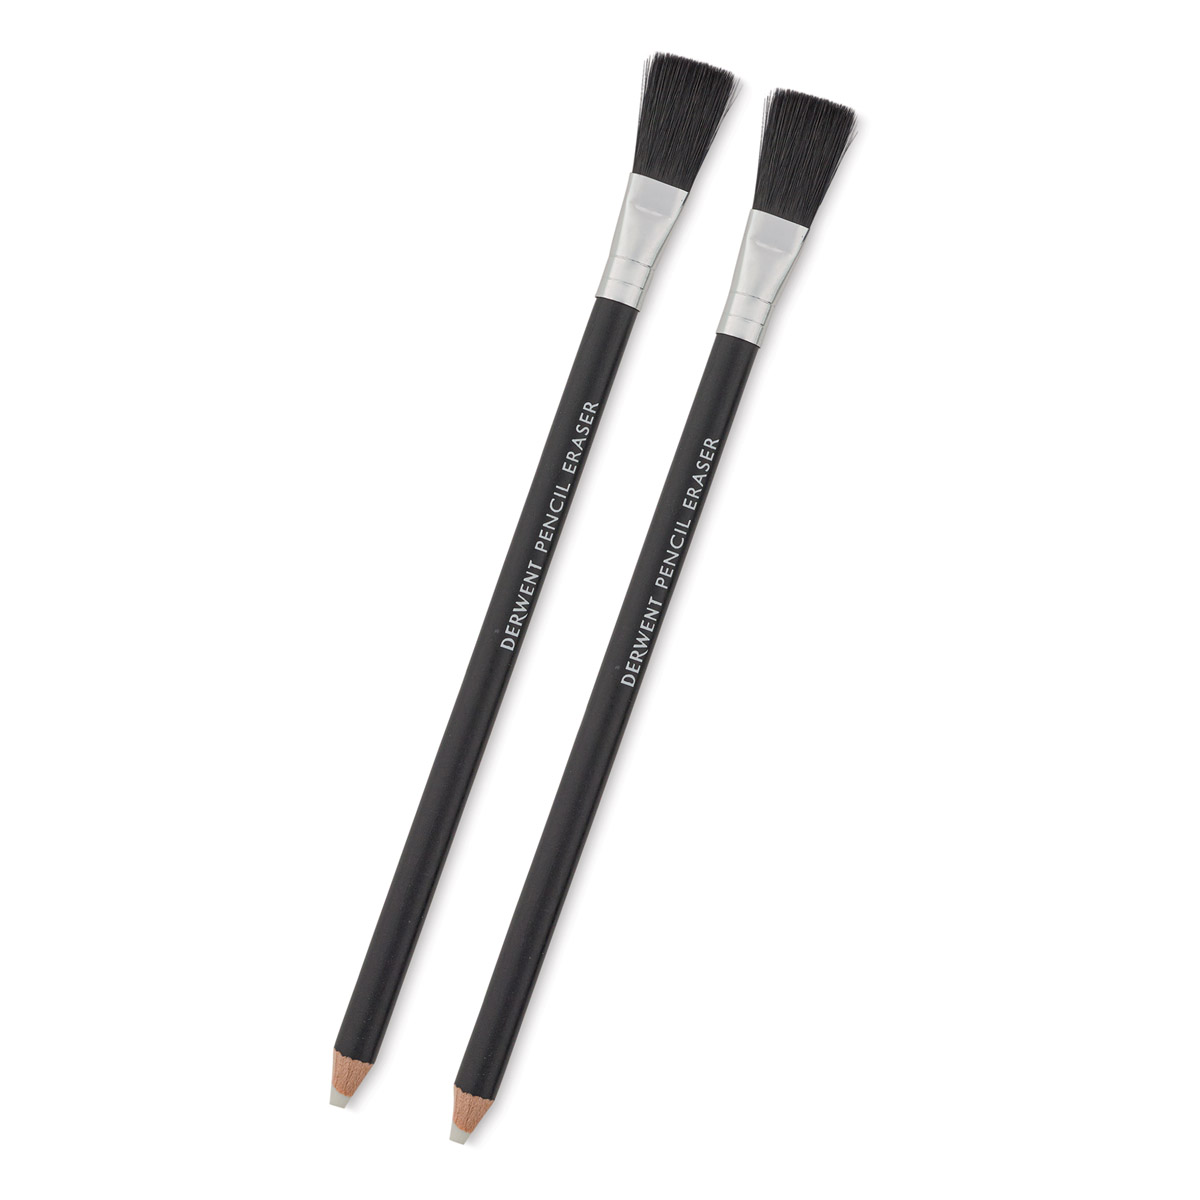 Derwent Pencil Eraser, Set of 2, Accessories